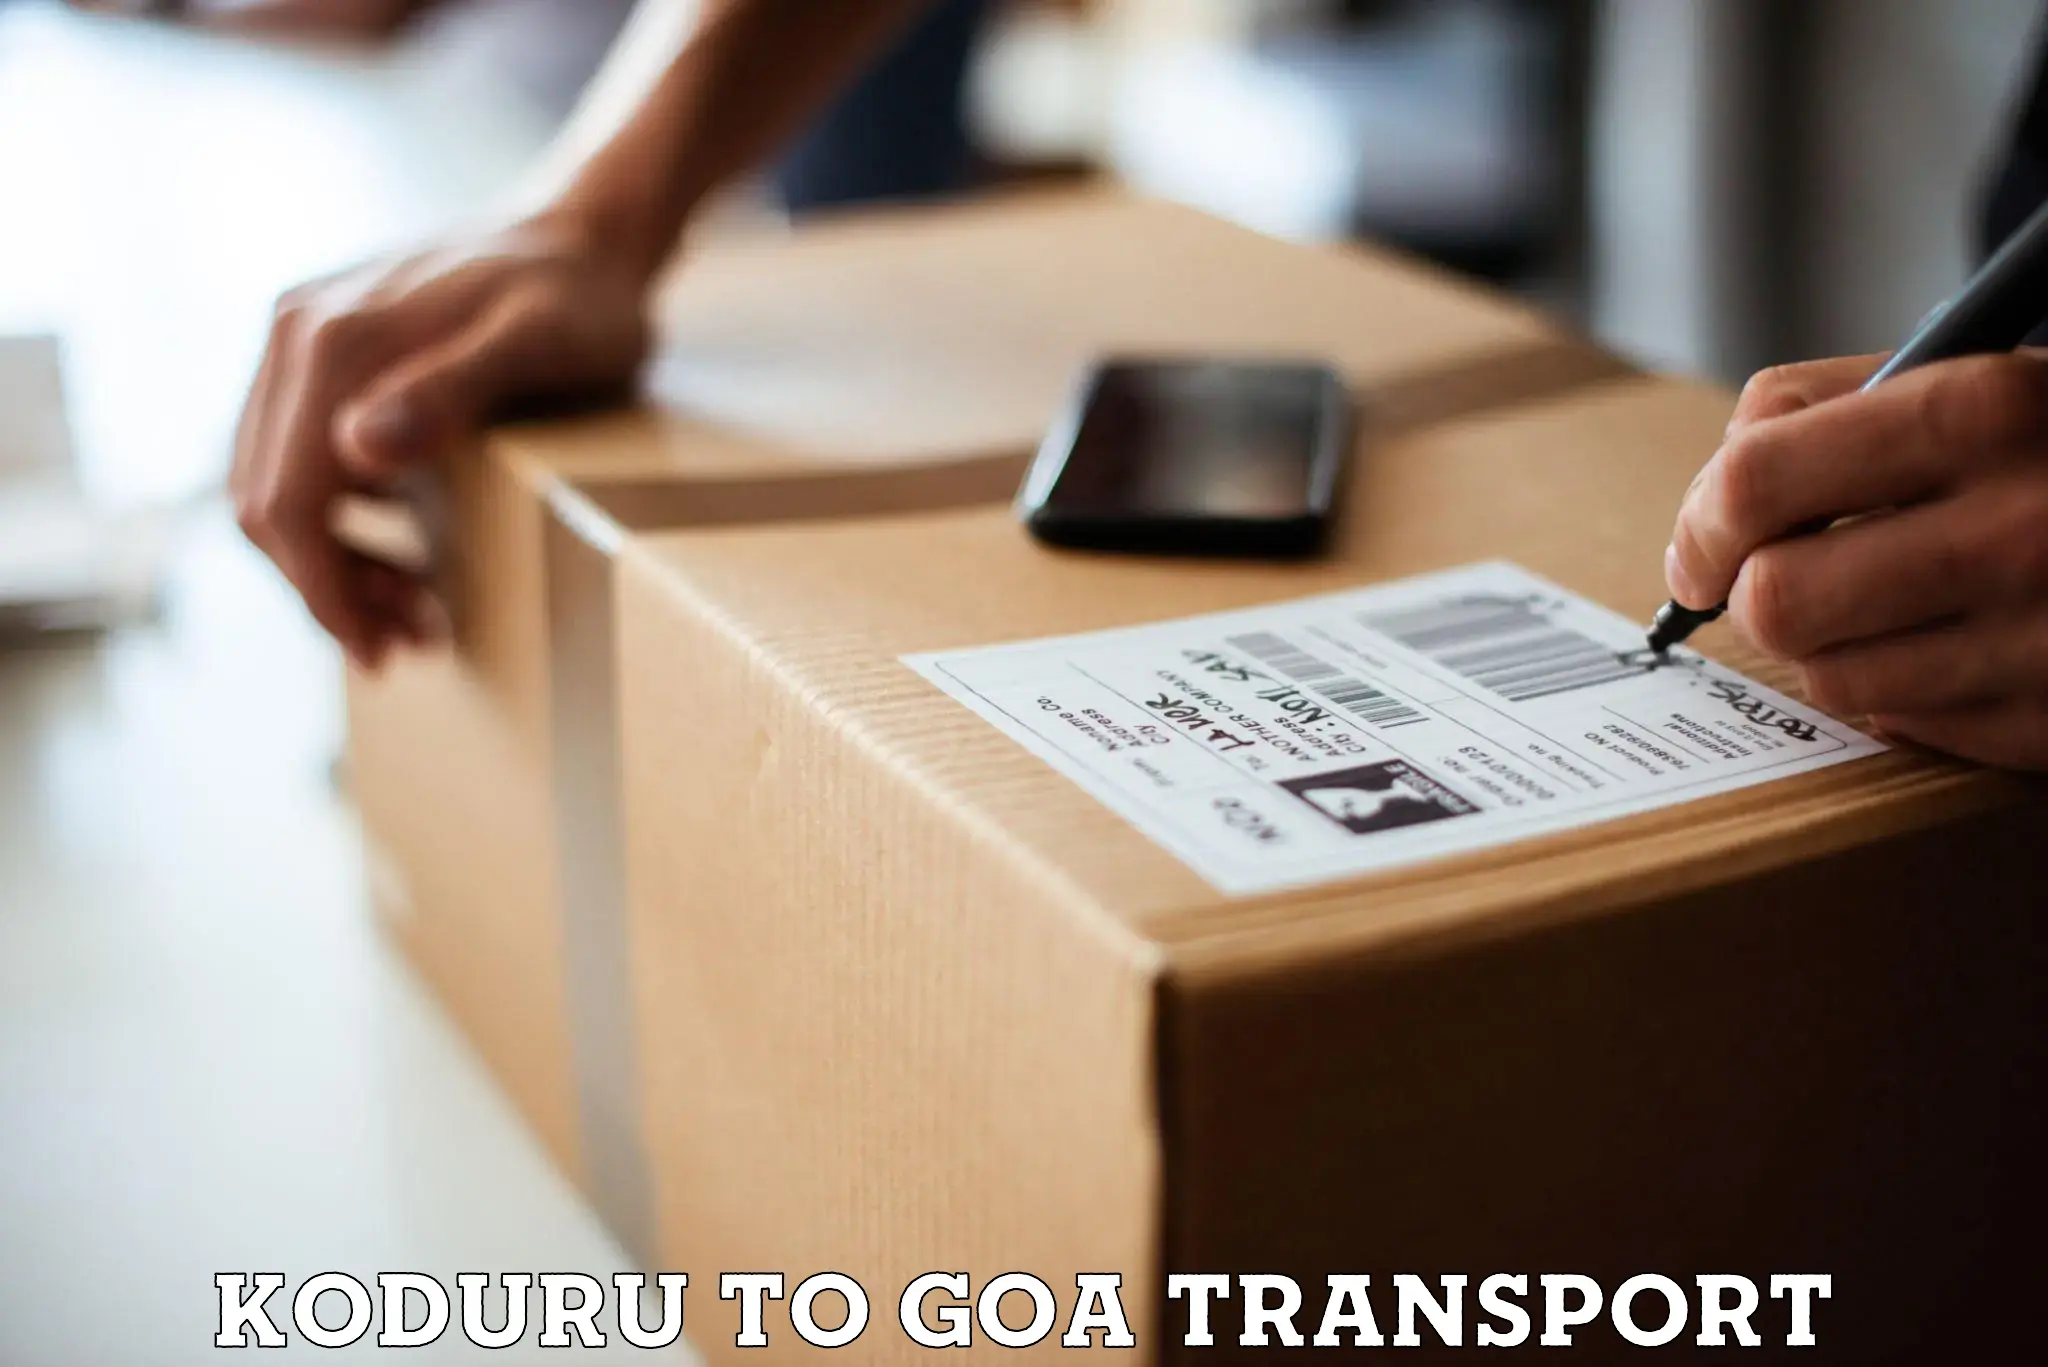 Two wheeler transport services Koduru to NIT Goa